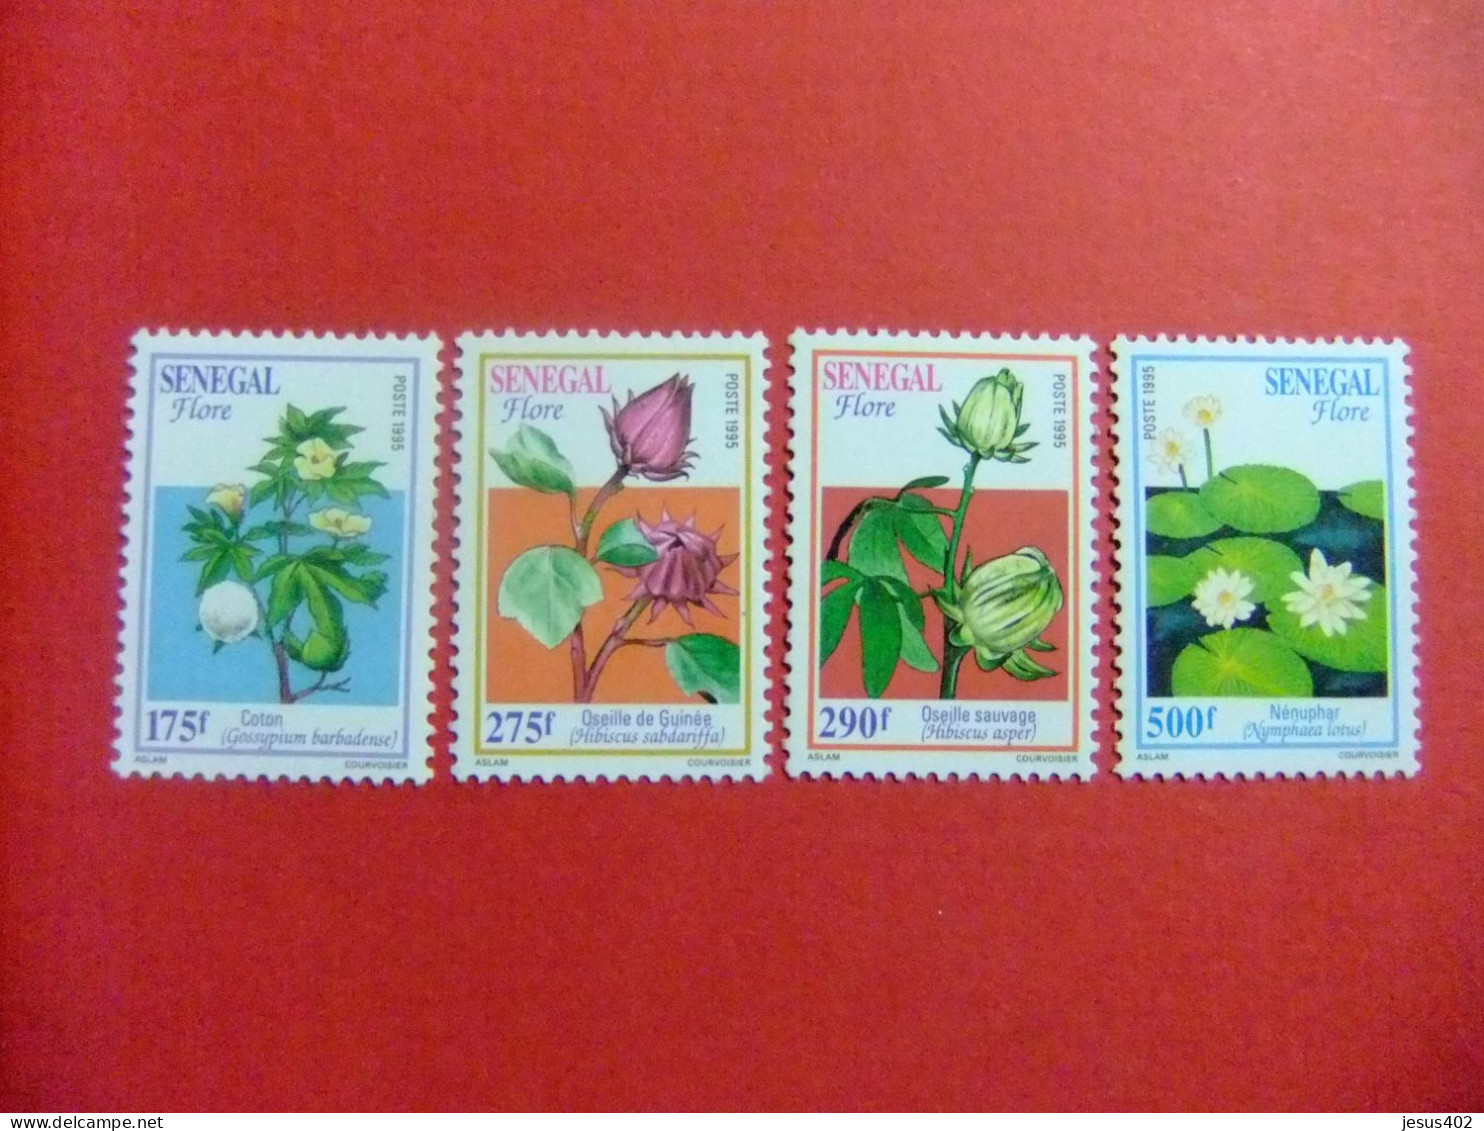 55 REPUBLICA SENEGAL 1995 / FLORA FLORES / YVERT 1169 / 1172 MNH - Sénégal (1960-...)